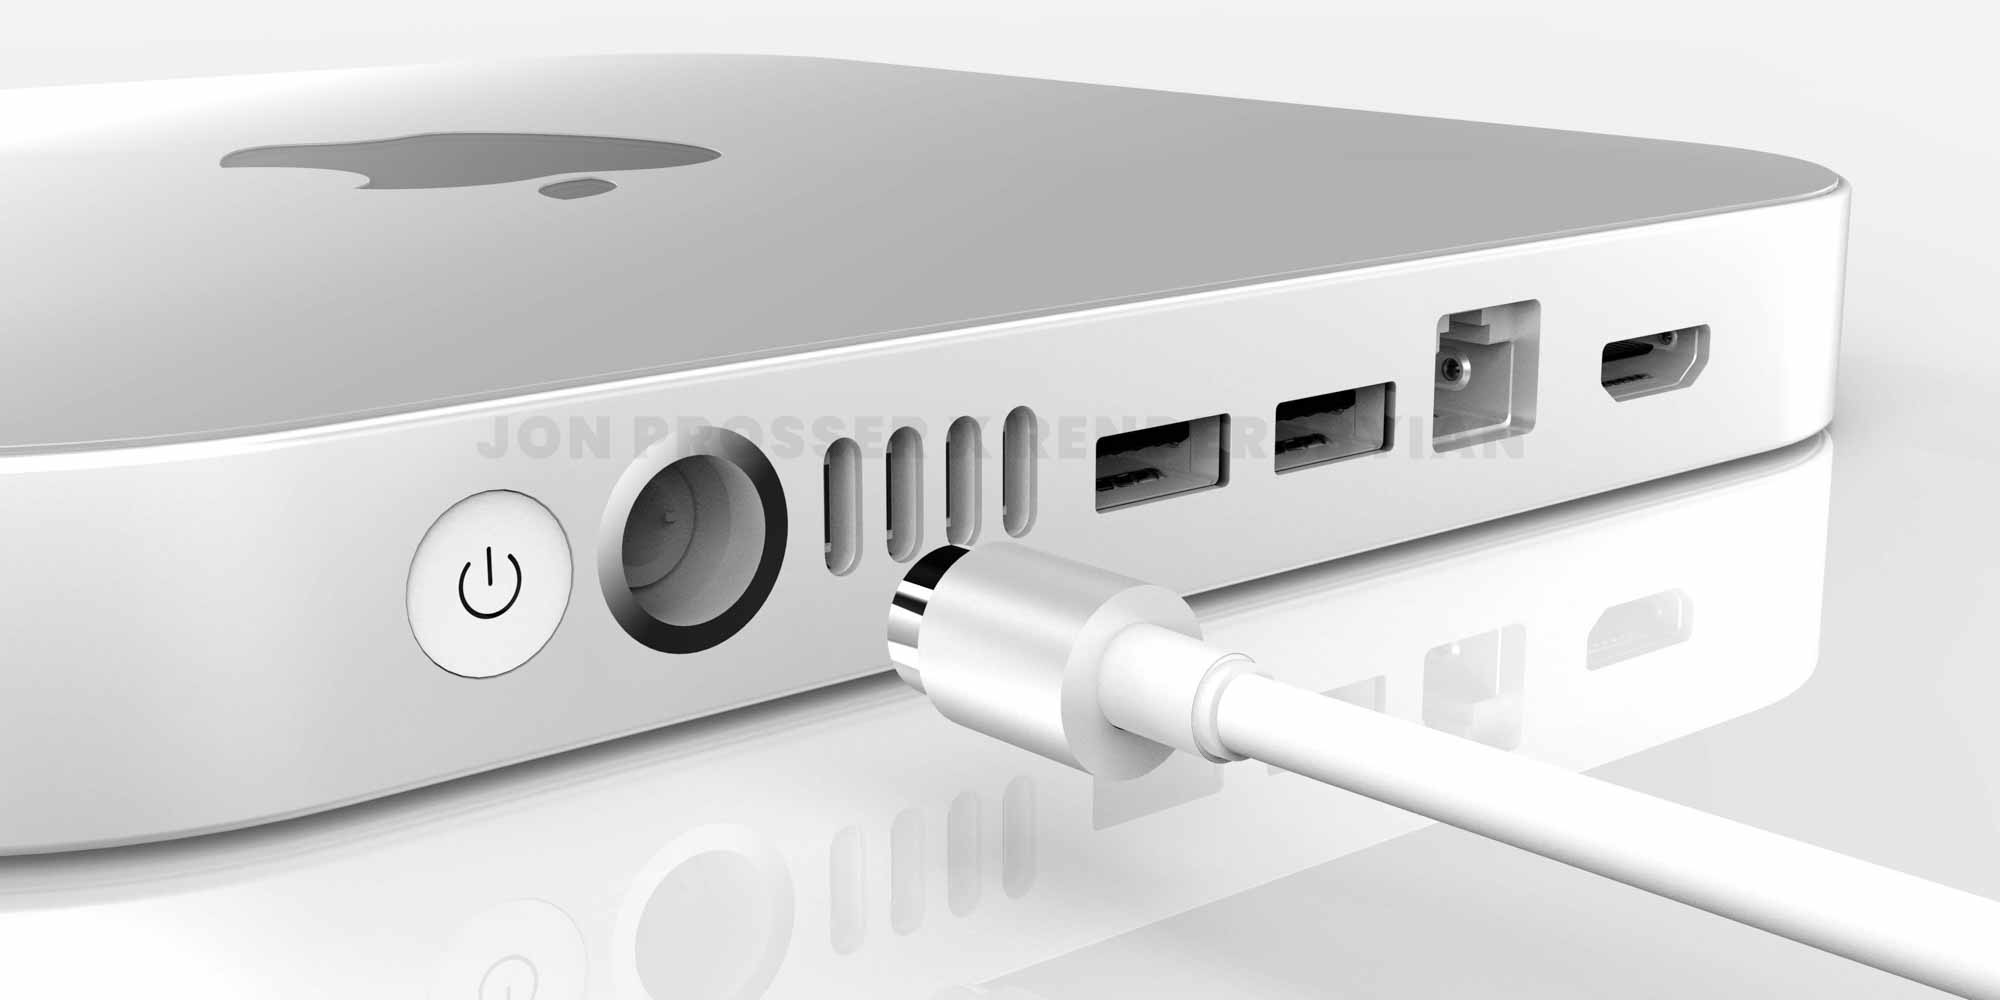 Гурман: Обновленный Mac mini с новым дизайном и дополнительными портами, которые появятся в «следующие несколько месяцев»